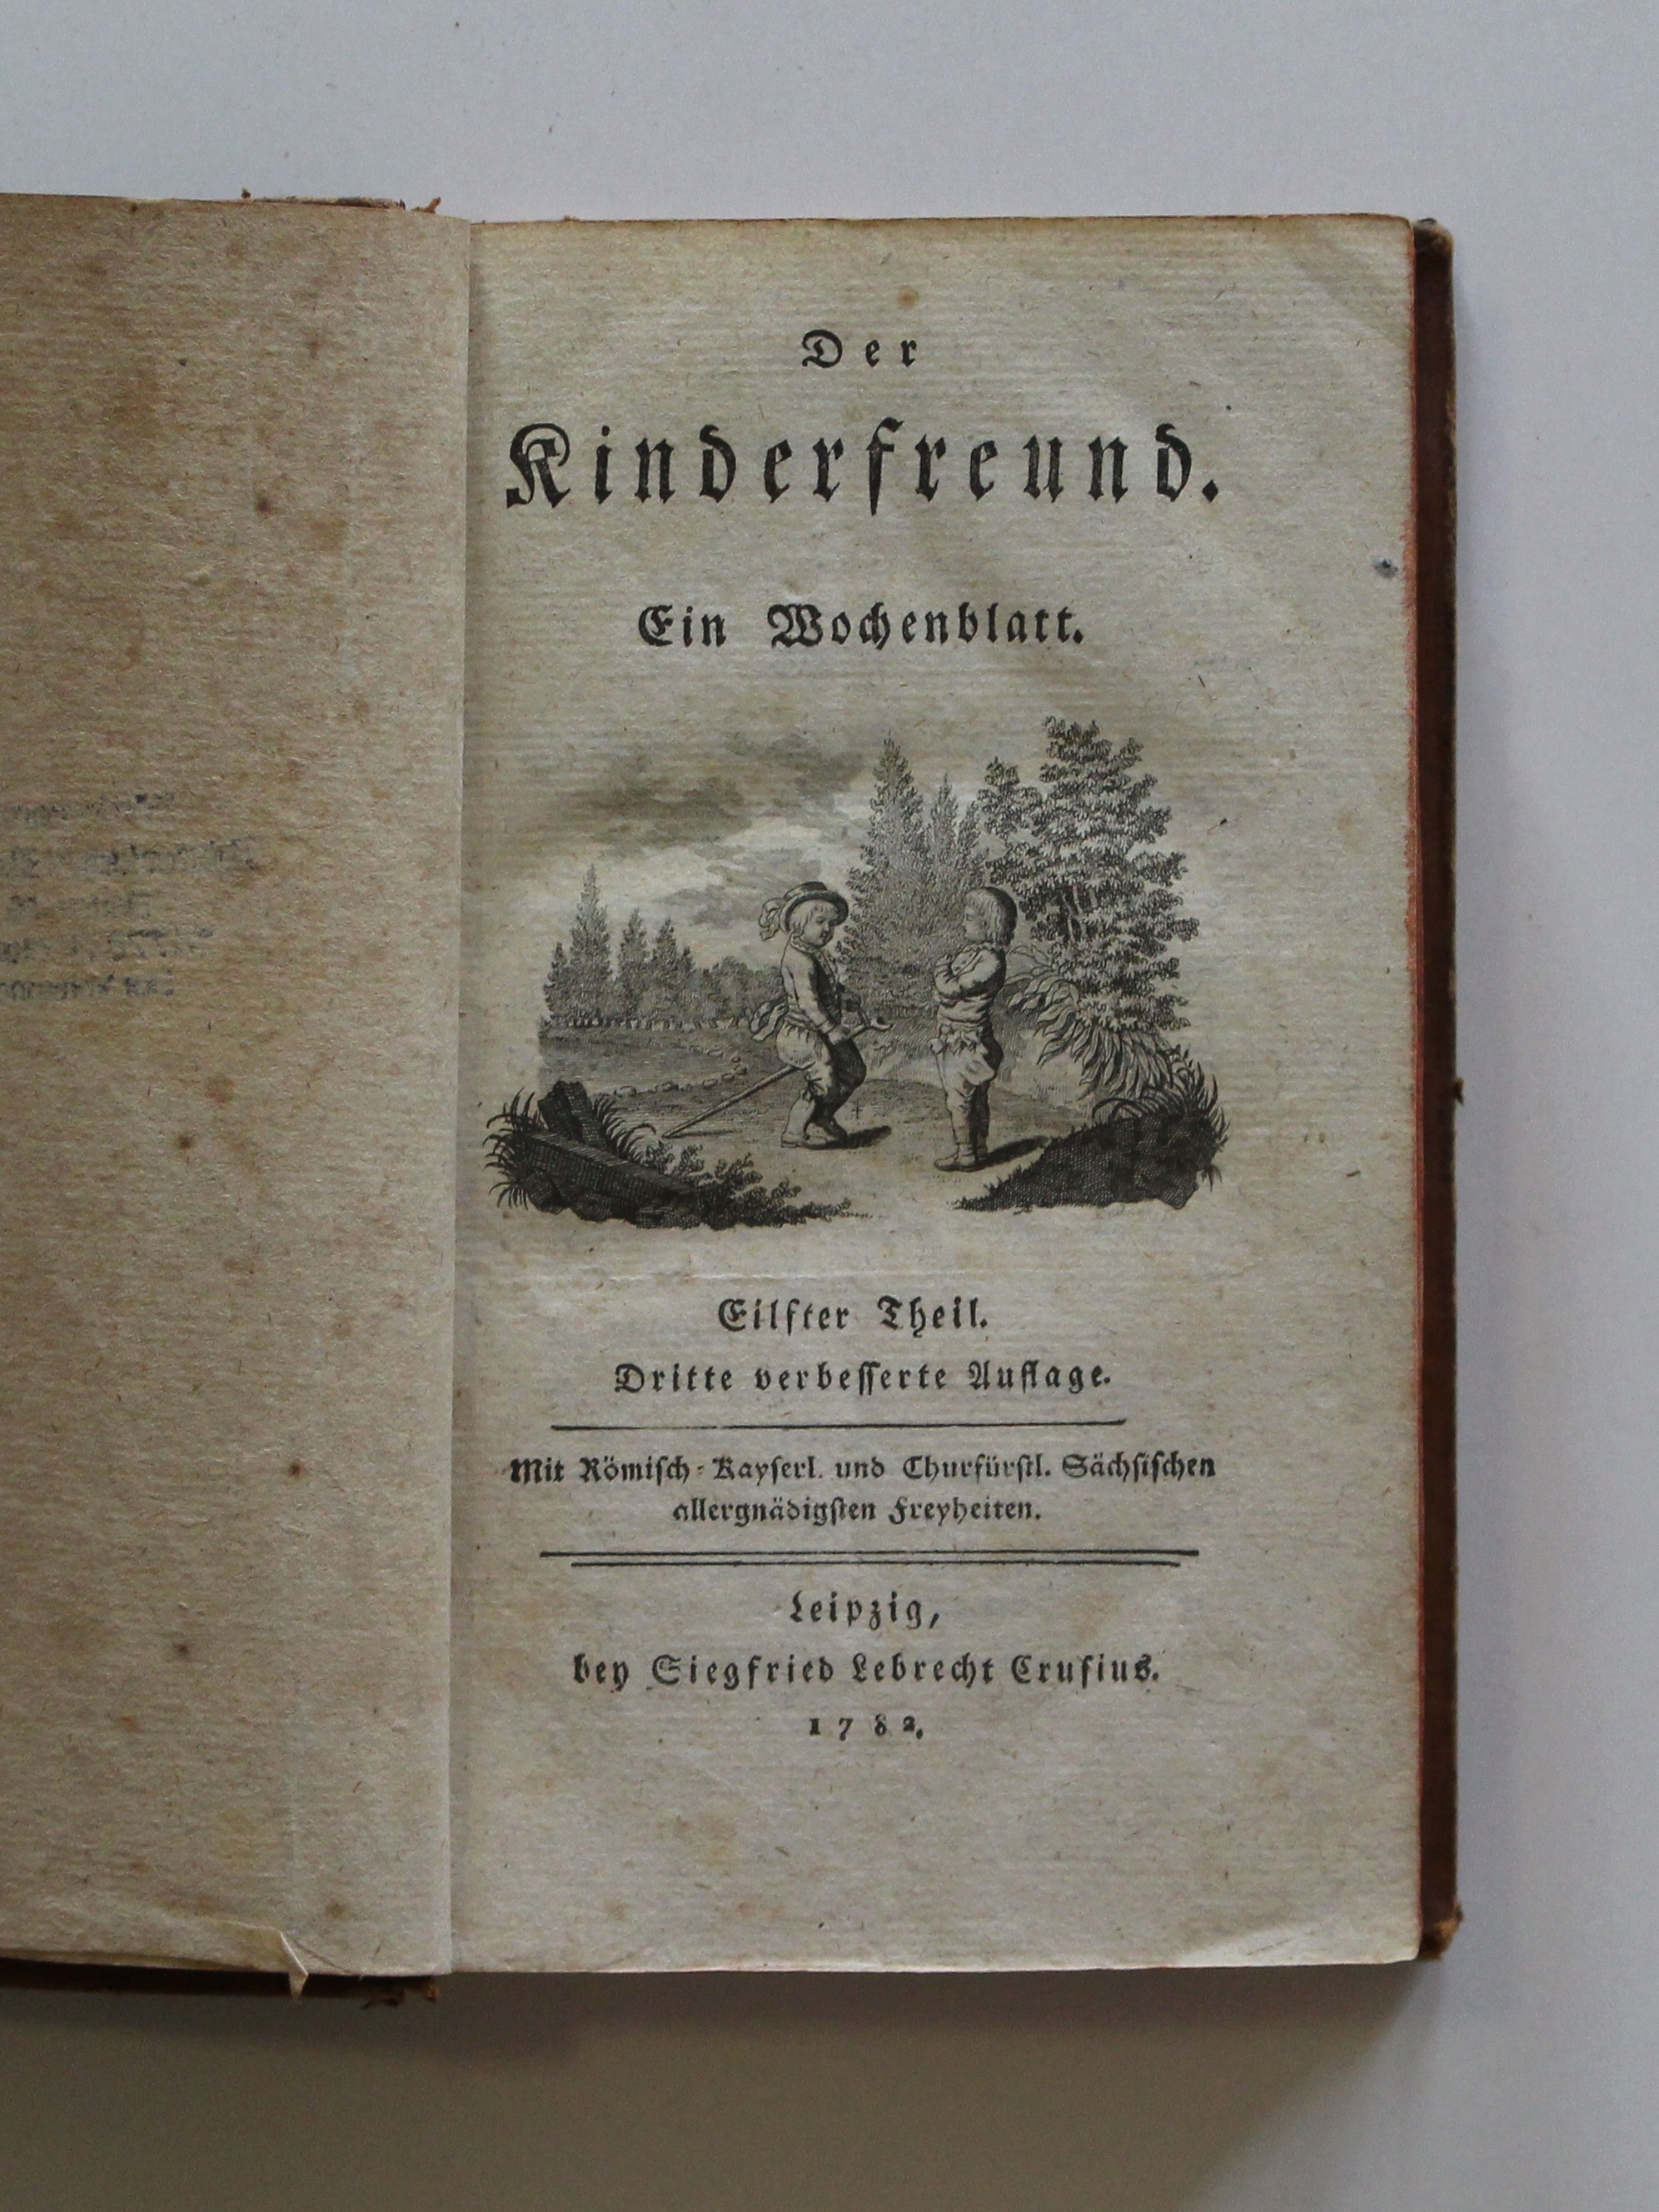 Rochow, Friedrich Eberhard von. Der Kinderfreund. Ein Wochenblatt. Elfter Theil. Zwölfter Theil. Leipzig, 1782 (Reckahner Museen CC BY-NC-SA)